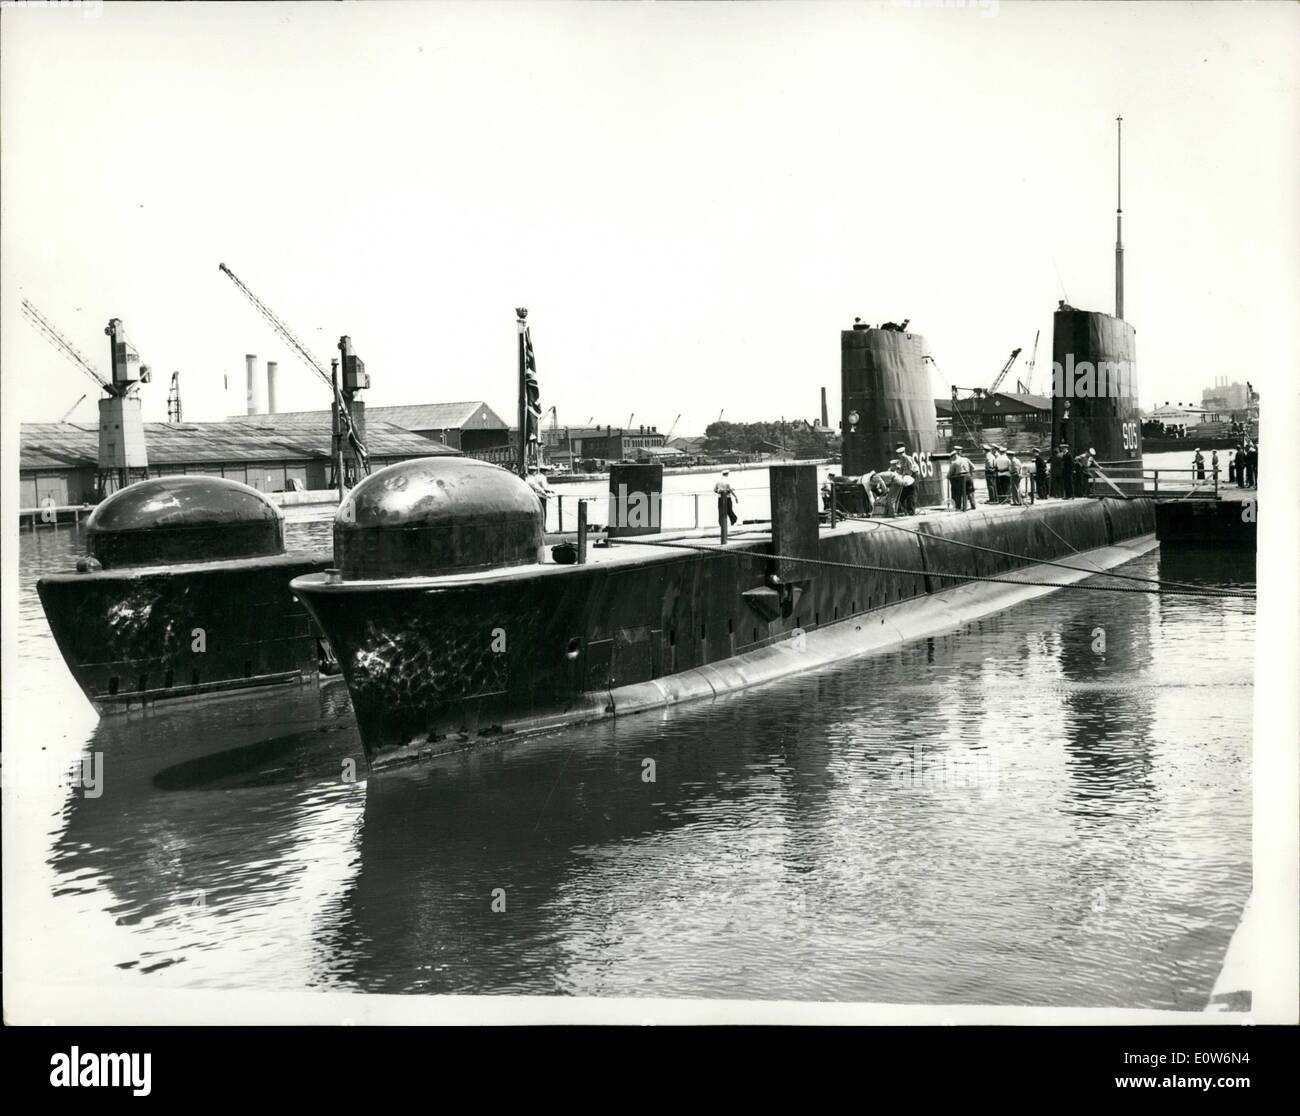 08 août 1961 - visite de Londres. : sous-marins sous-marins H.M. Finwhale et Alcide sont arrivés dans l'ouest de l'Inde Docks ce matin pour une visite de quatre jours à Londres, au cours de laquelle plusieurs centaines de cadets de la locale se rendra à bord. La photo montre les deux sous-marins, ce matin, à l'ouest de l'Inde des quais. Banque D'Images